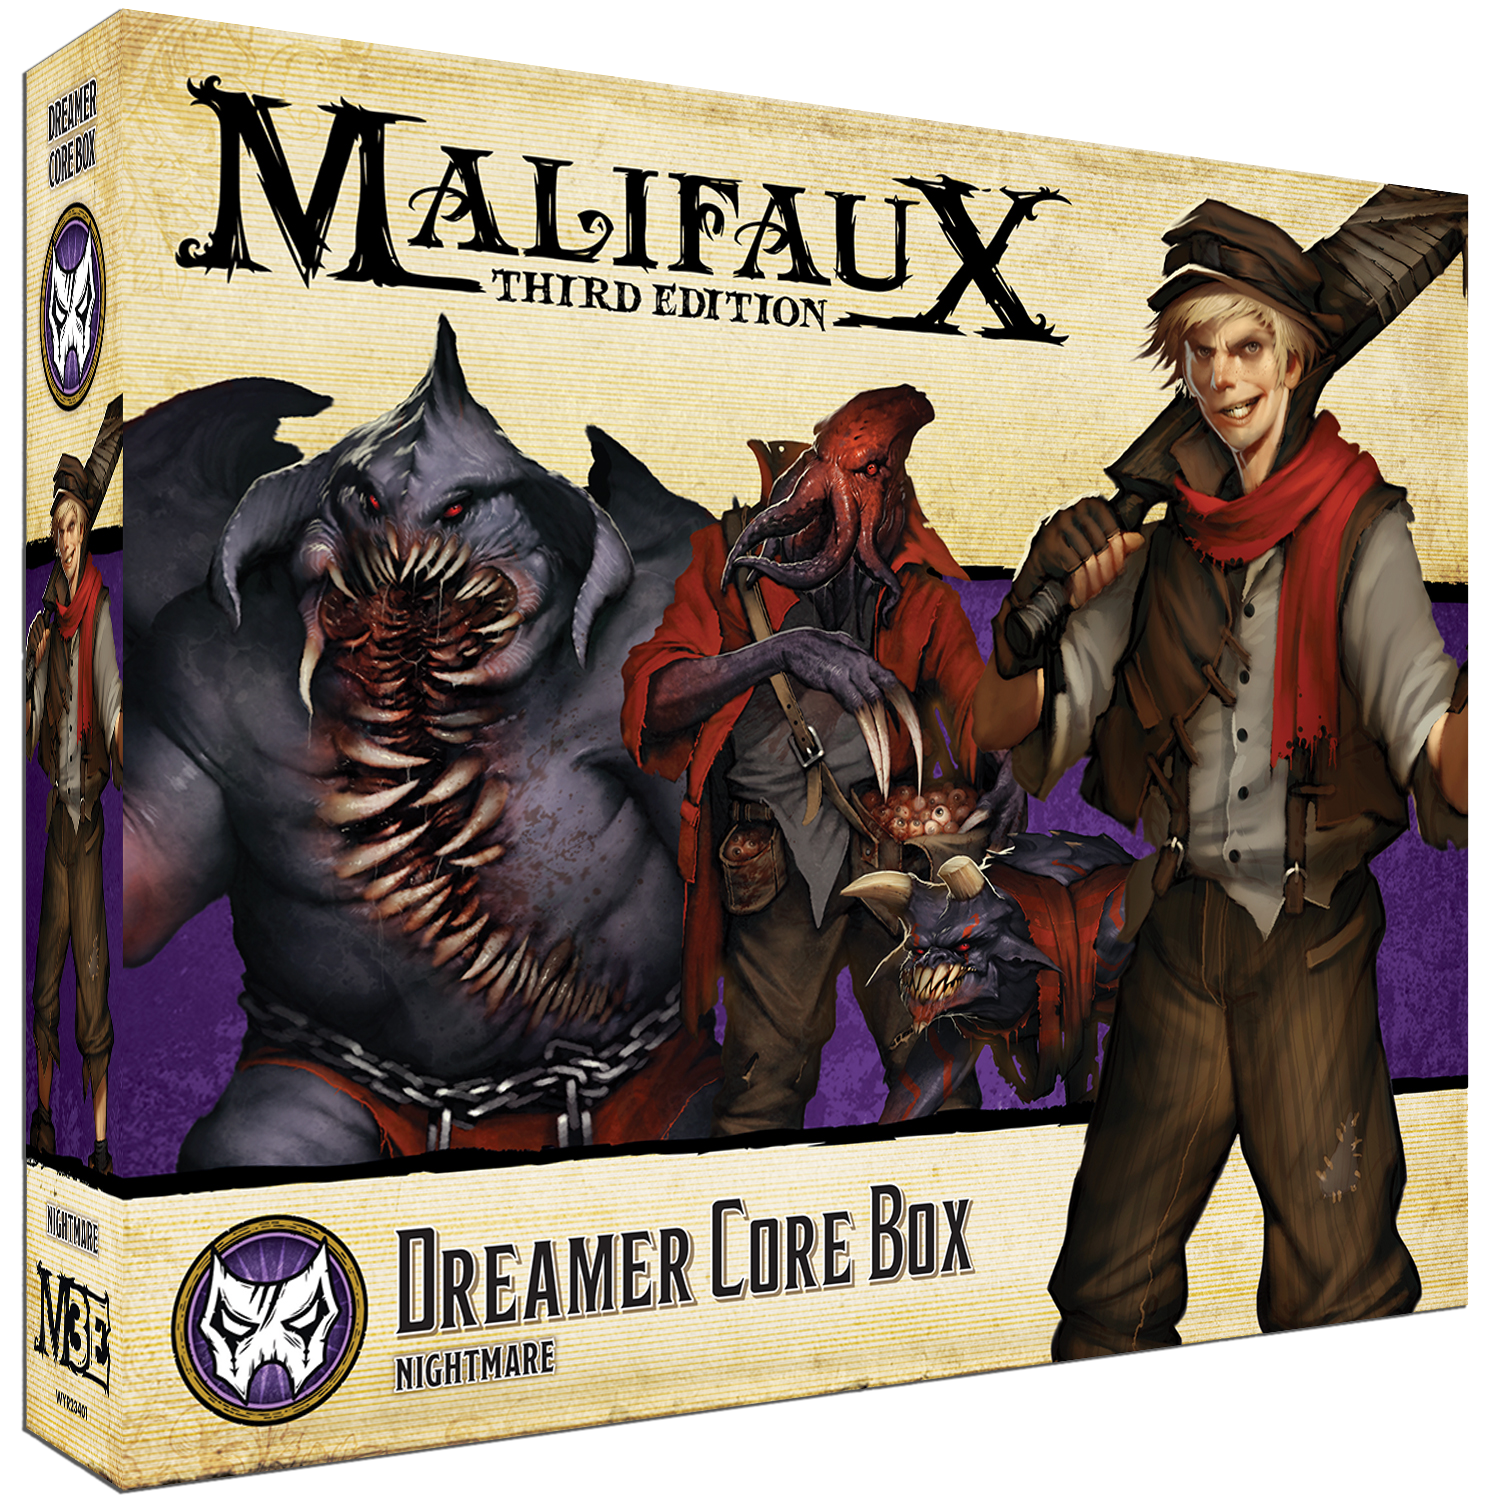 dreamer core box front of box